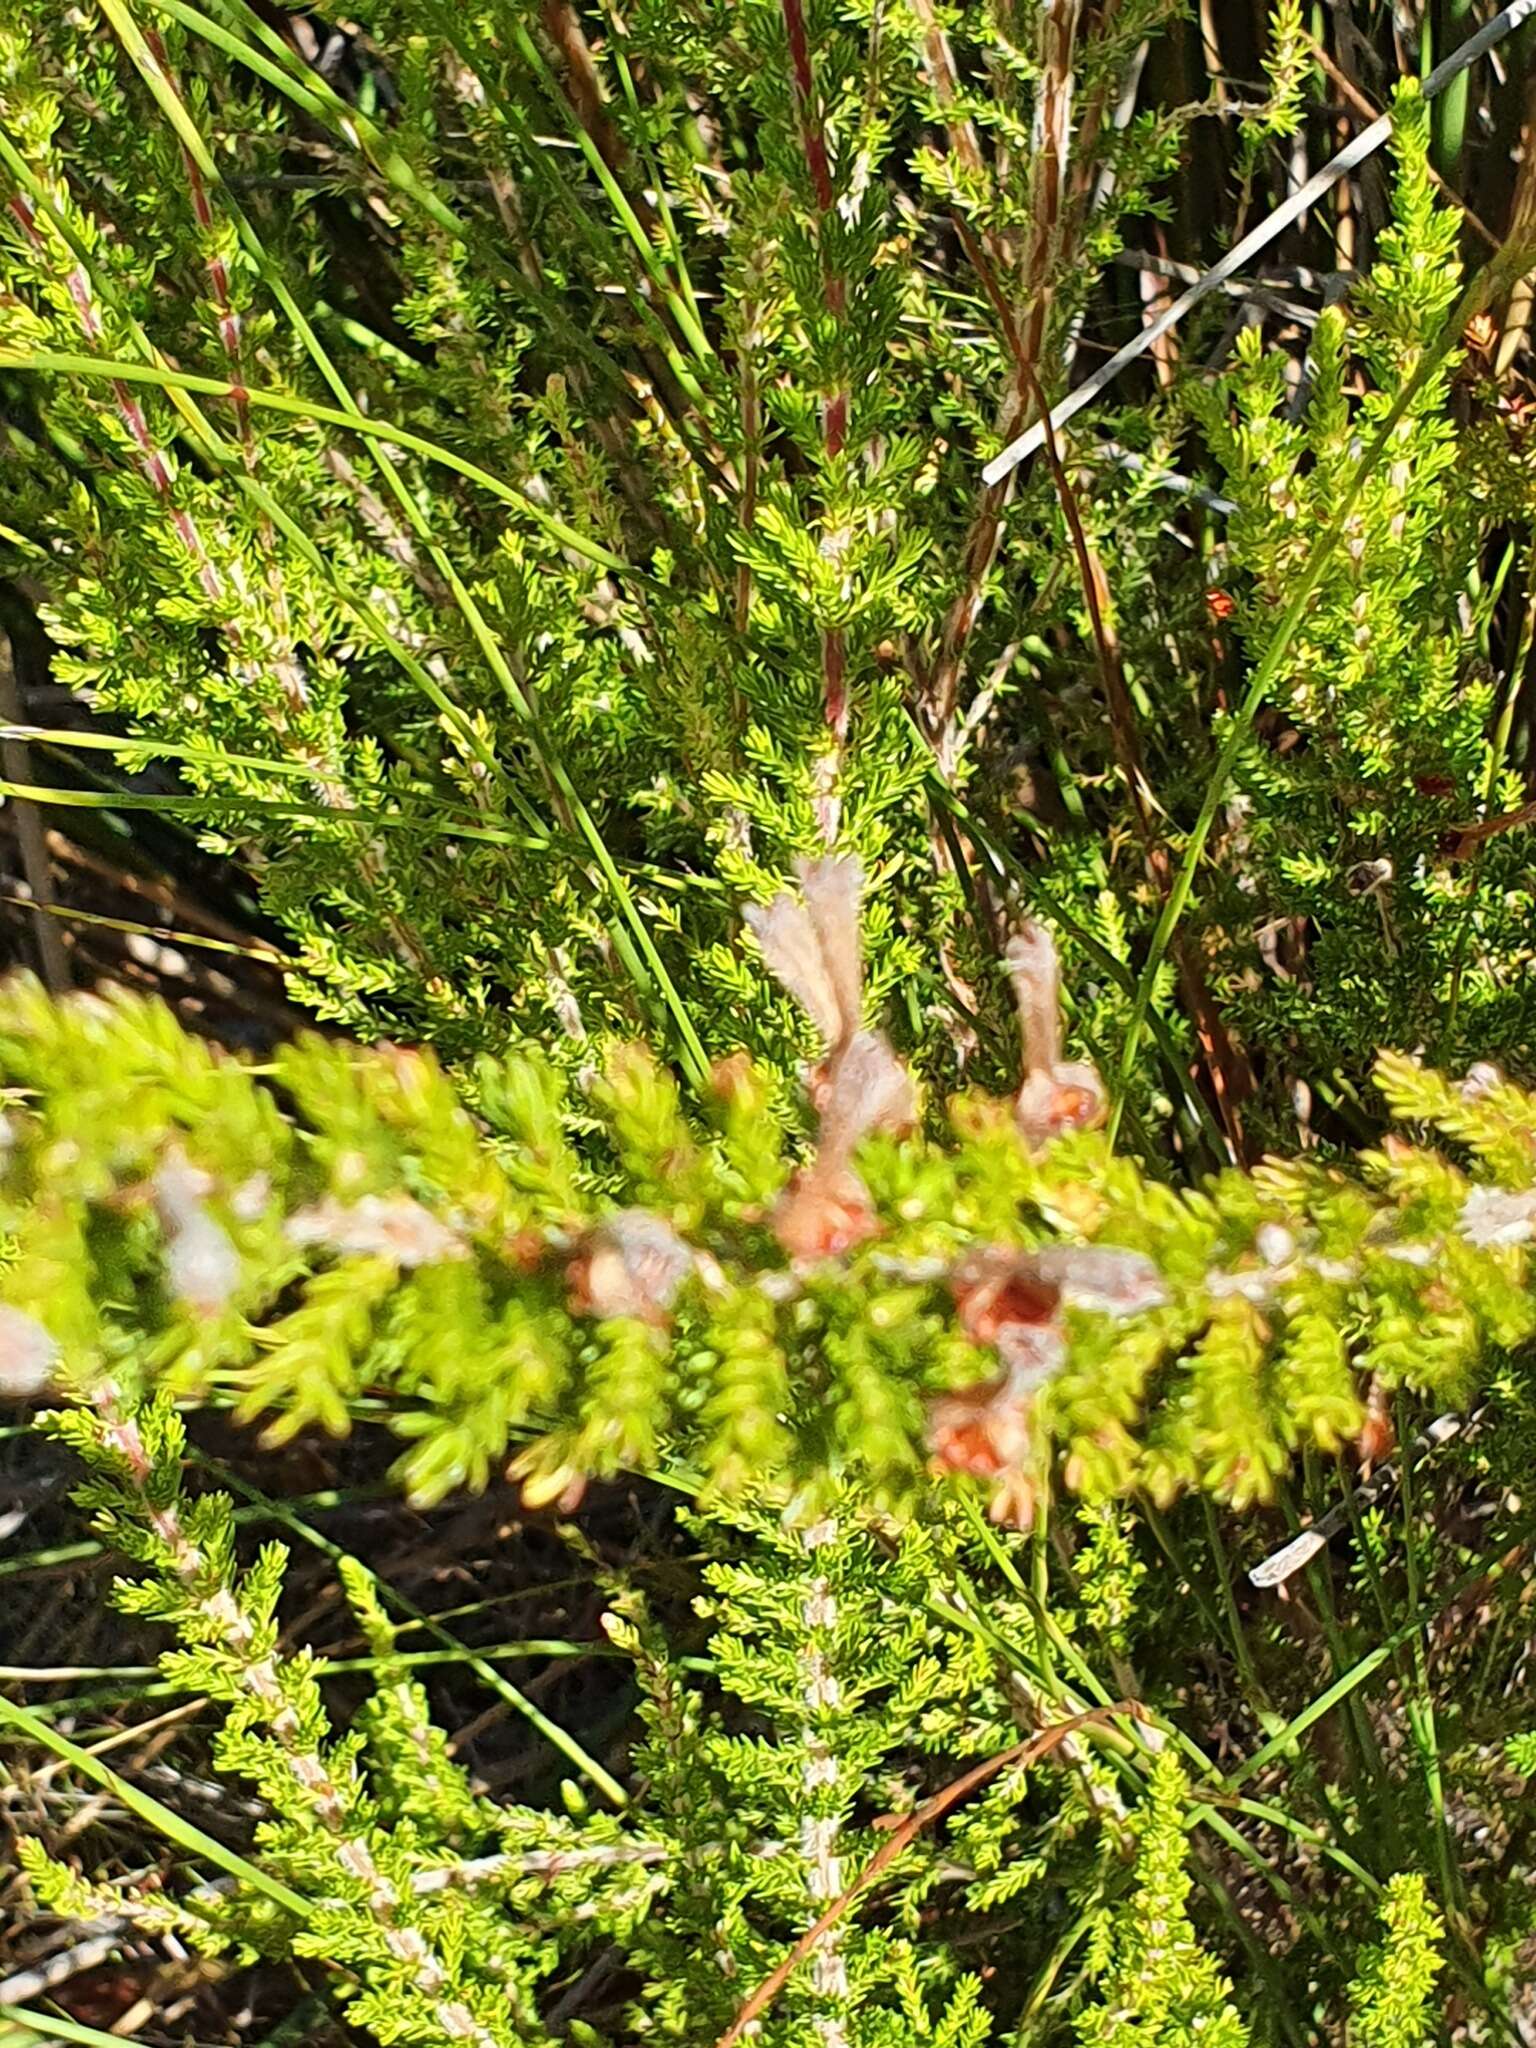 Image of Erica perspicua subsp. perspicua